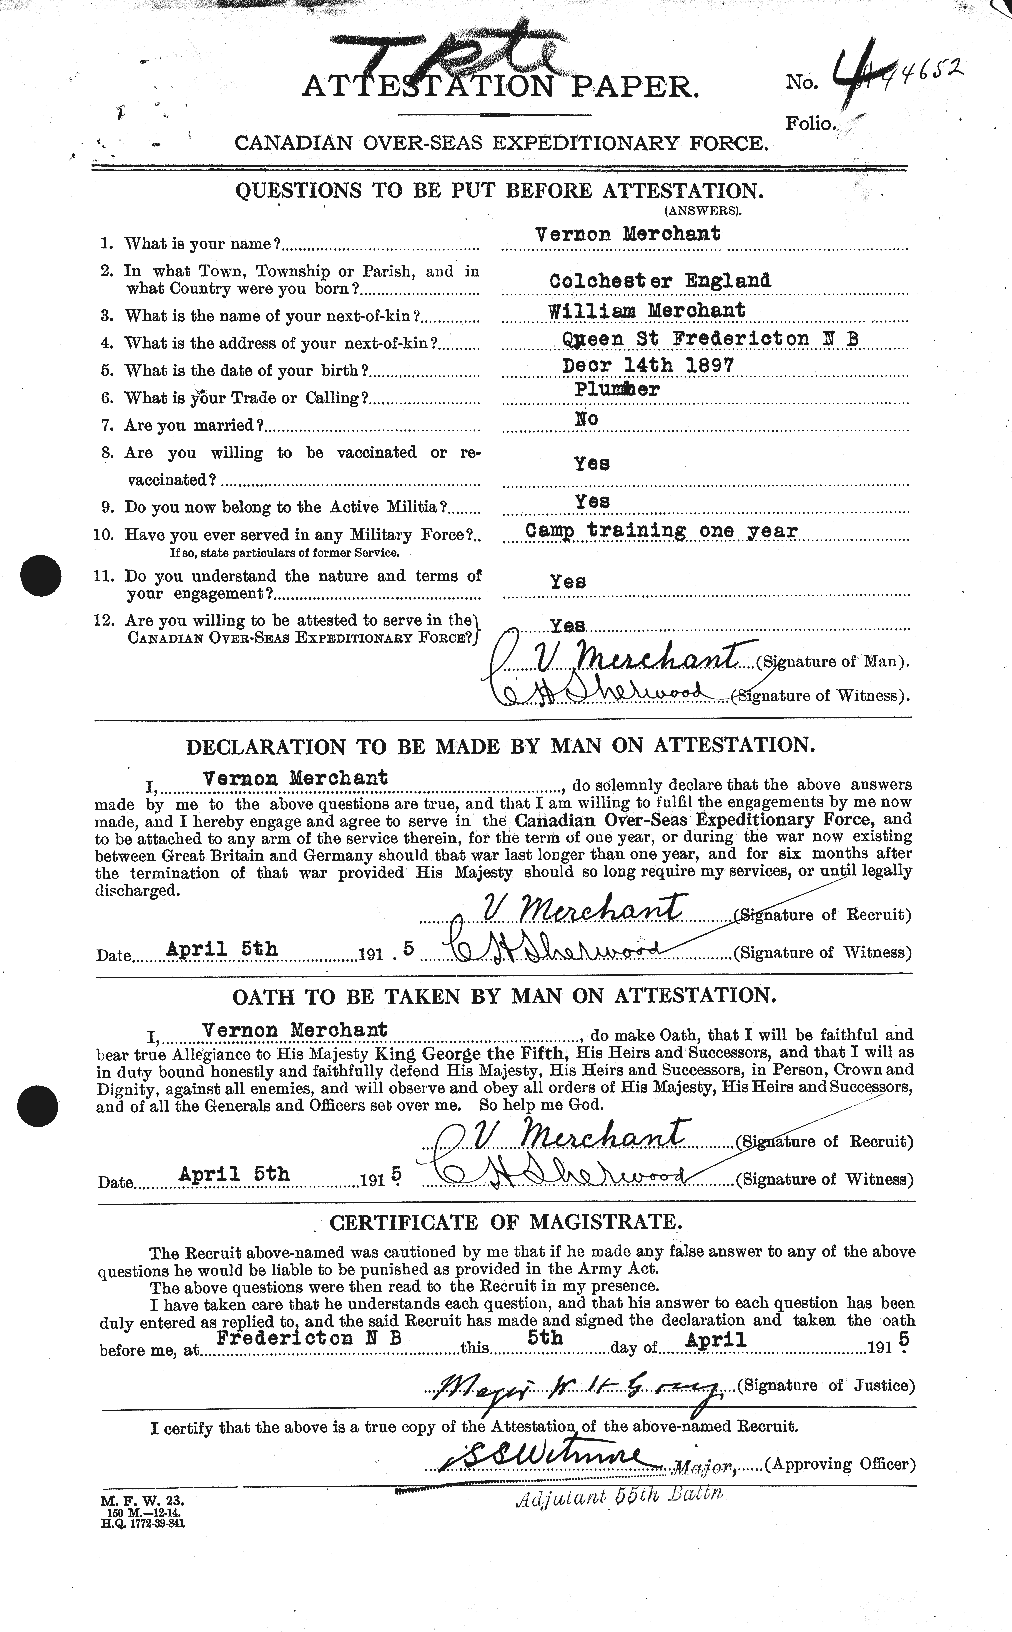 Dossiers du Personnel de la Première Guerre mondiale - CEC 493432a